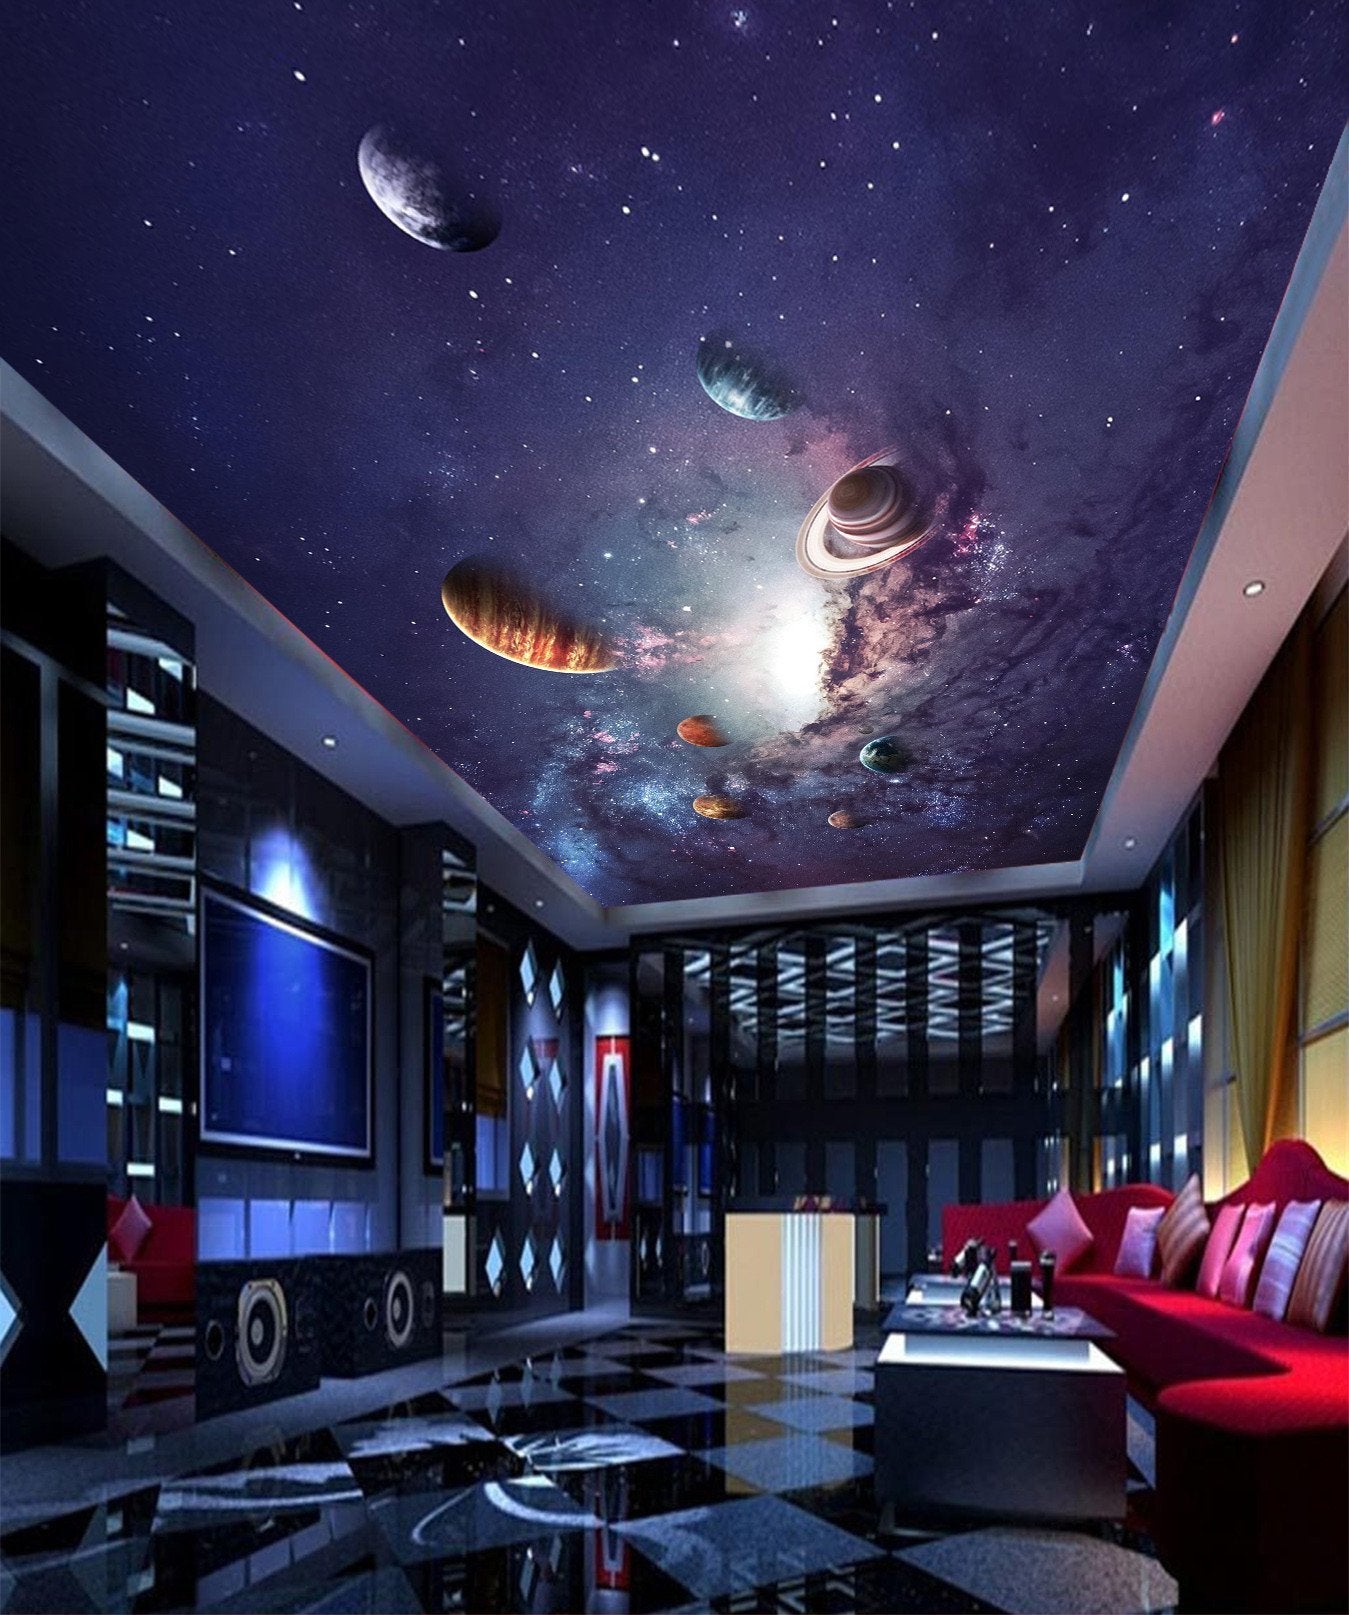 Включи подсветку космос. 3д натяжной потолок Галактика. Натяжной потолок Млечный путь. Натяжной потолок космос. Потолок в космическом стиле.